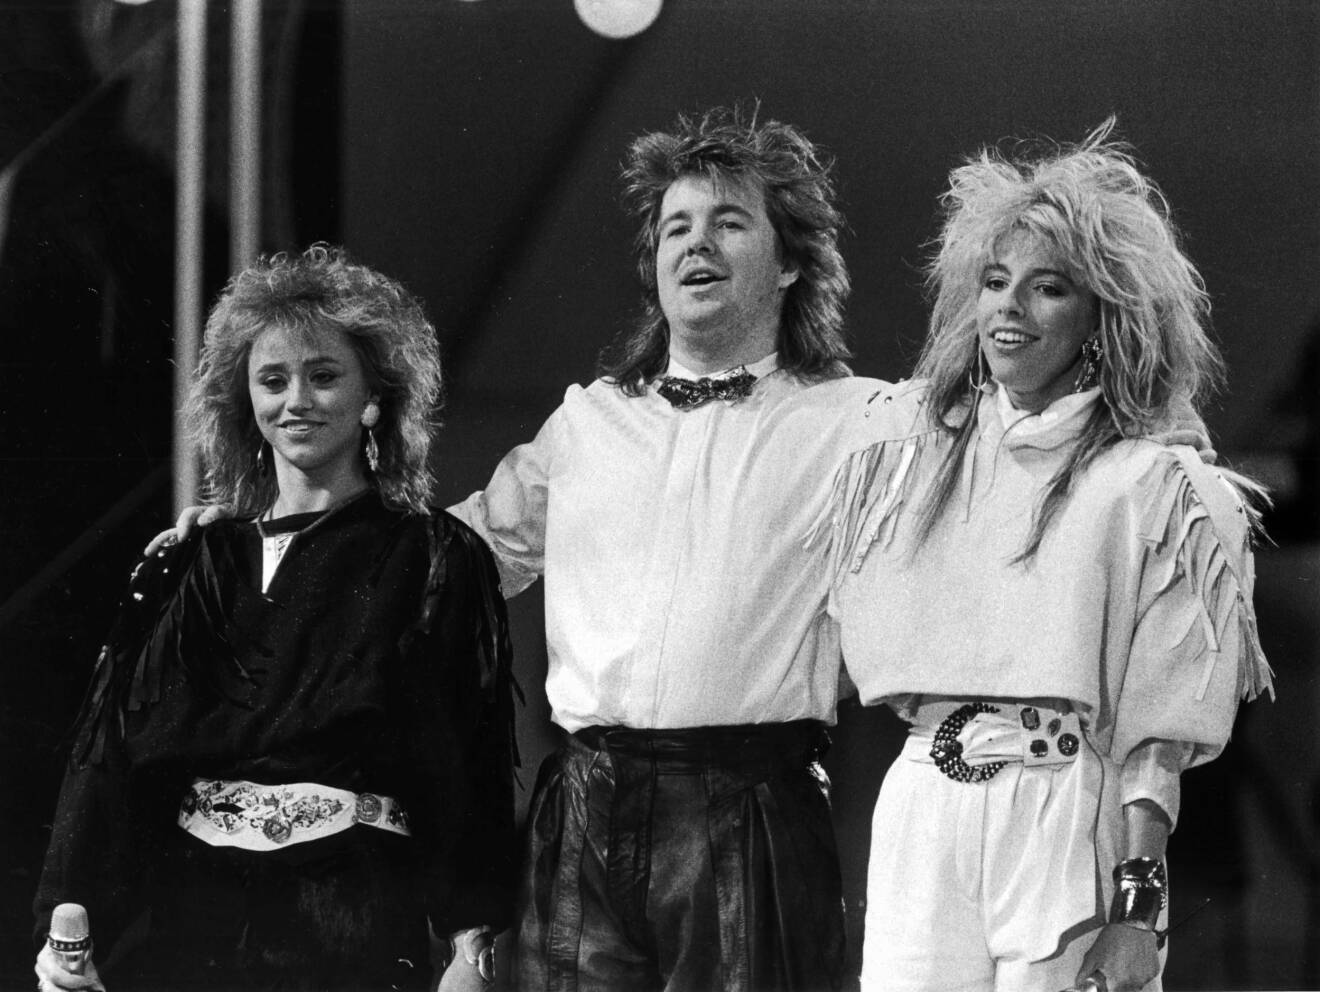 Sound of Music var en popgrupp bestående av Peter Grönvall, Angelique Widengren och Nanne Nordqvist. Gruppen slog igenom i Melodifestivalen 1986 med Eldorado då de kom fyra